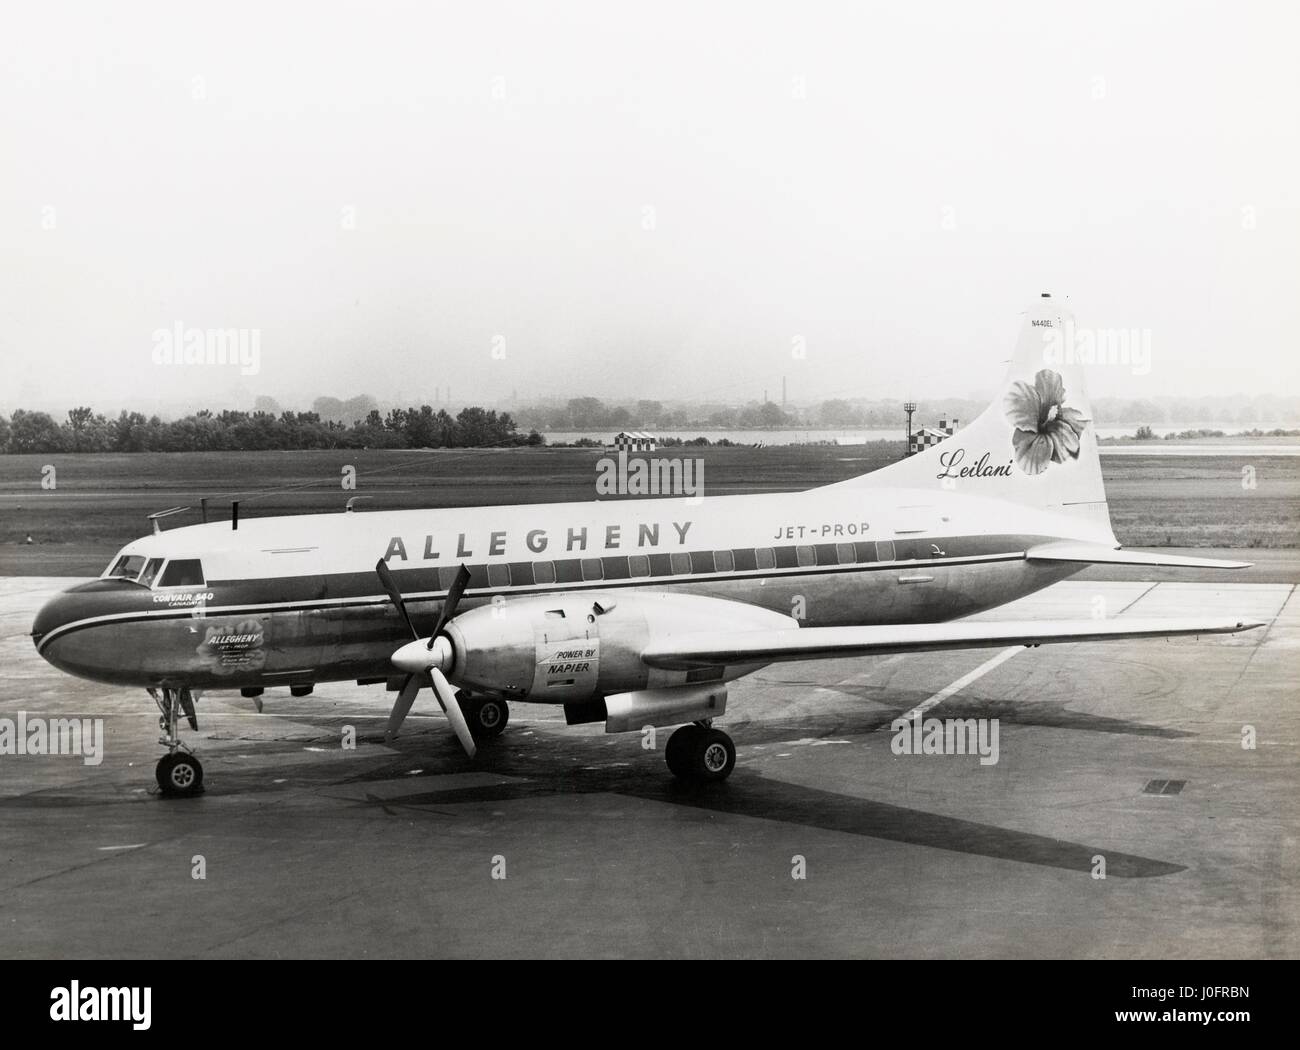 Allegheny Jet prop, die Convair 540 an Allegheny Airlines vermietet Stockfoto